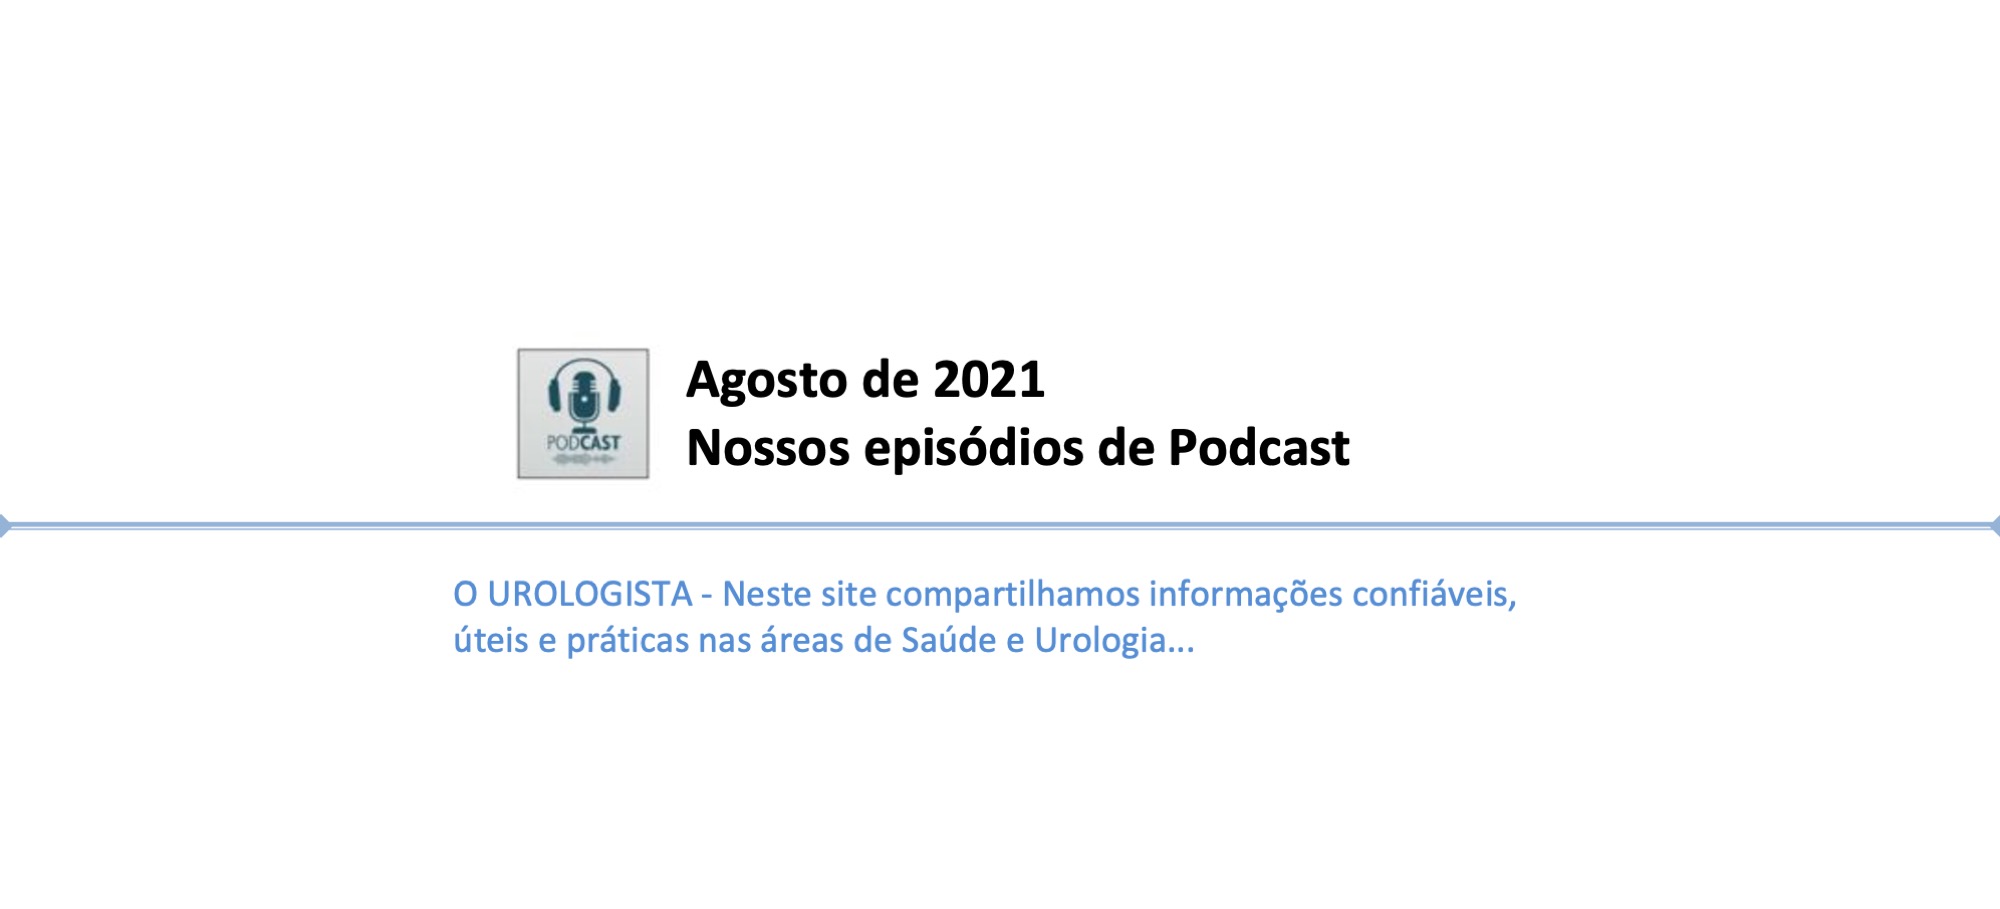 Agosto de 2021: nossos episódios de Podcast